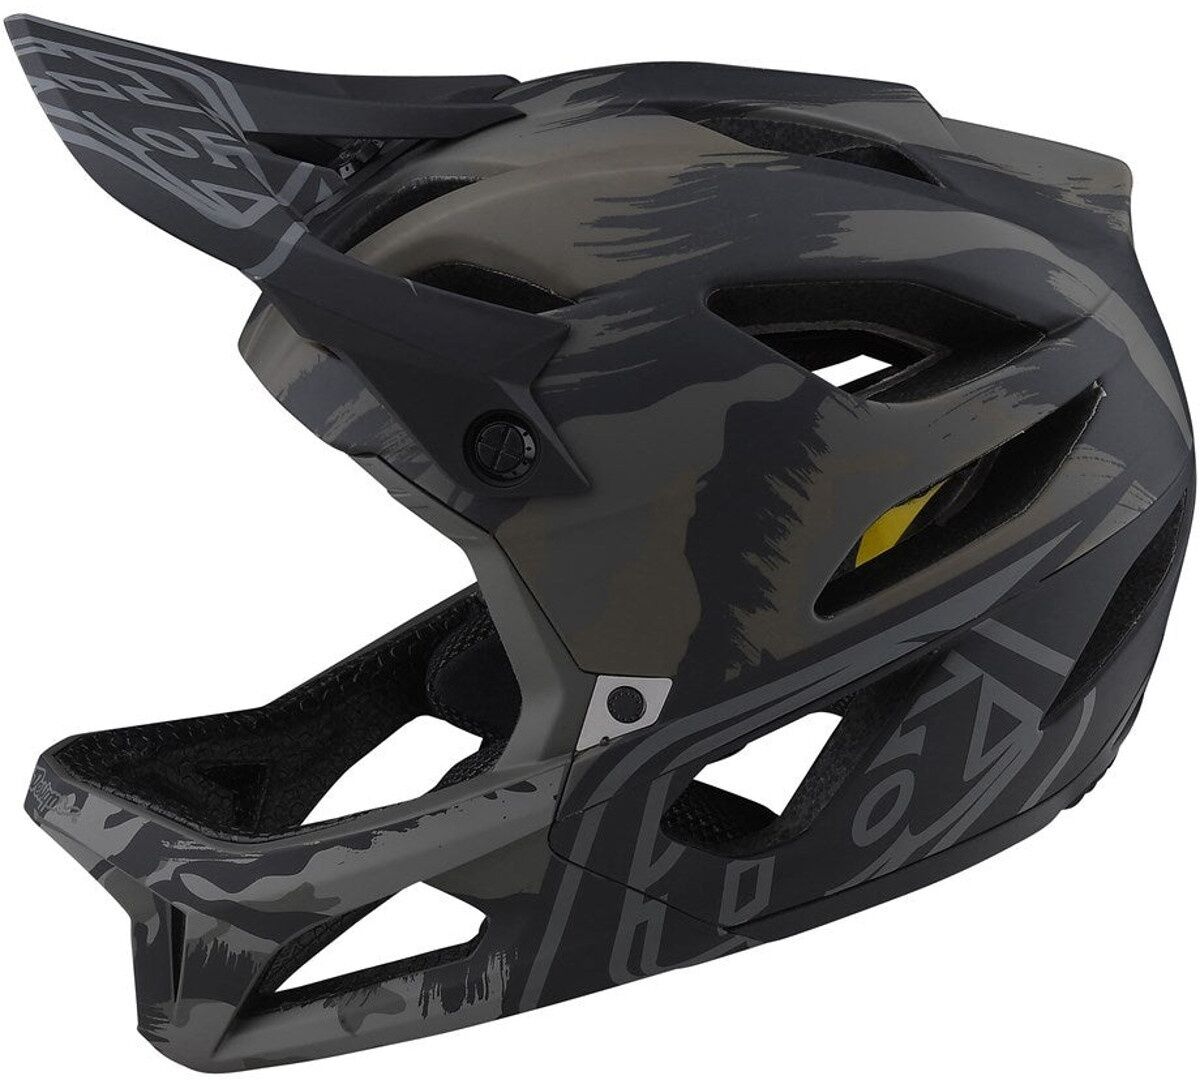 Photos - Bike Helmet TLD Lee Troy Lee Designs Stage Brush Camo Military Bicycle Helmet Unisex Black 